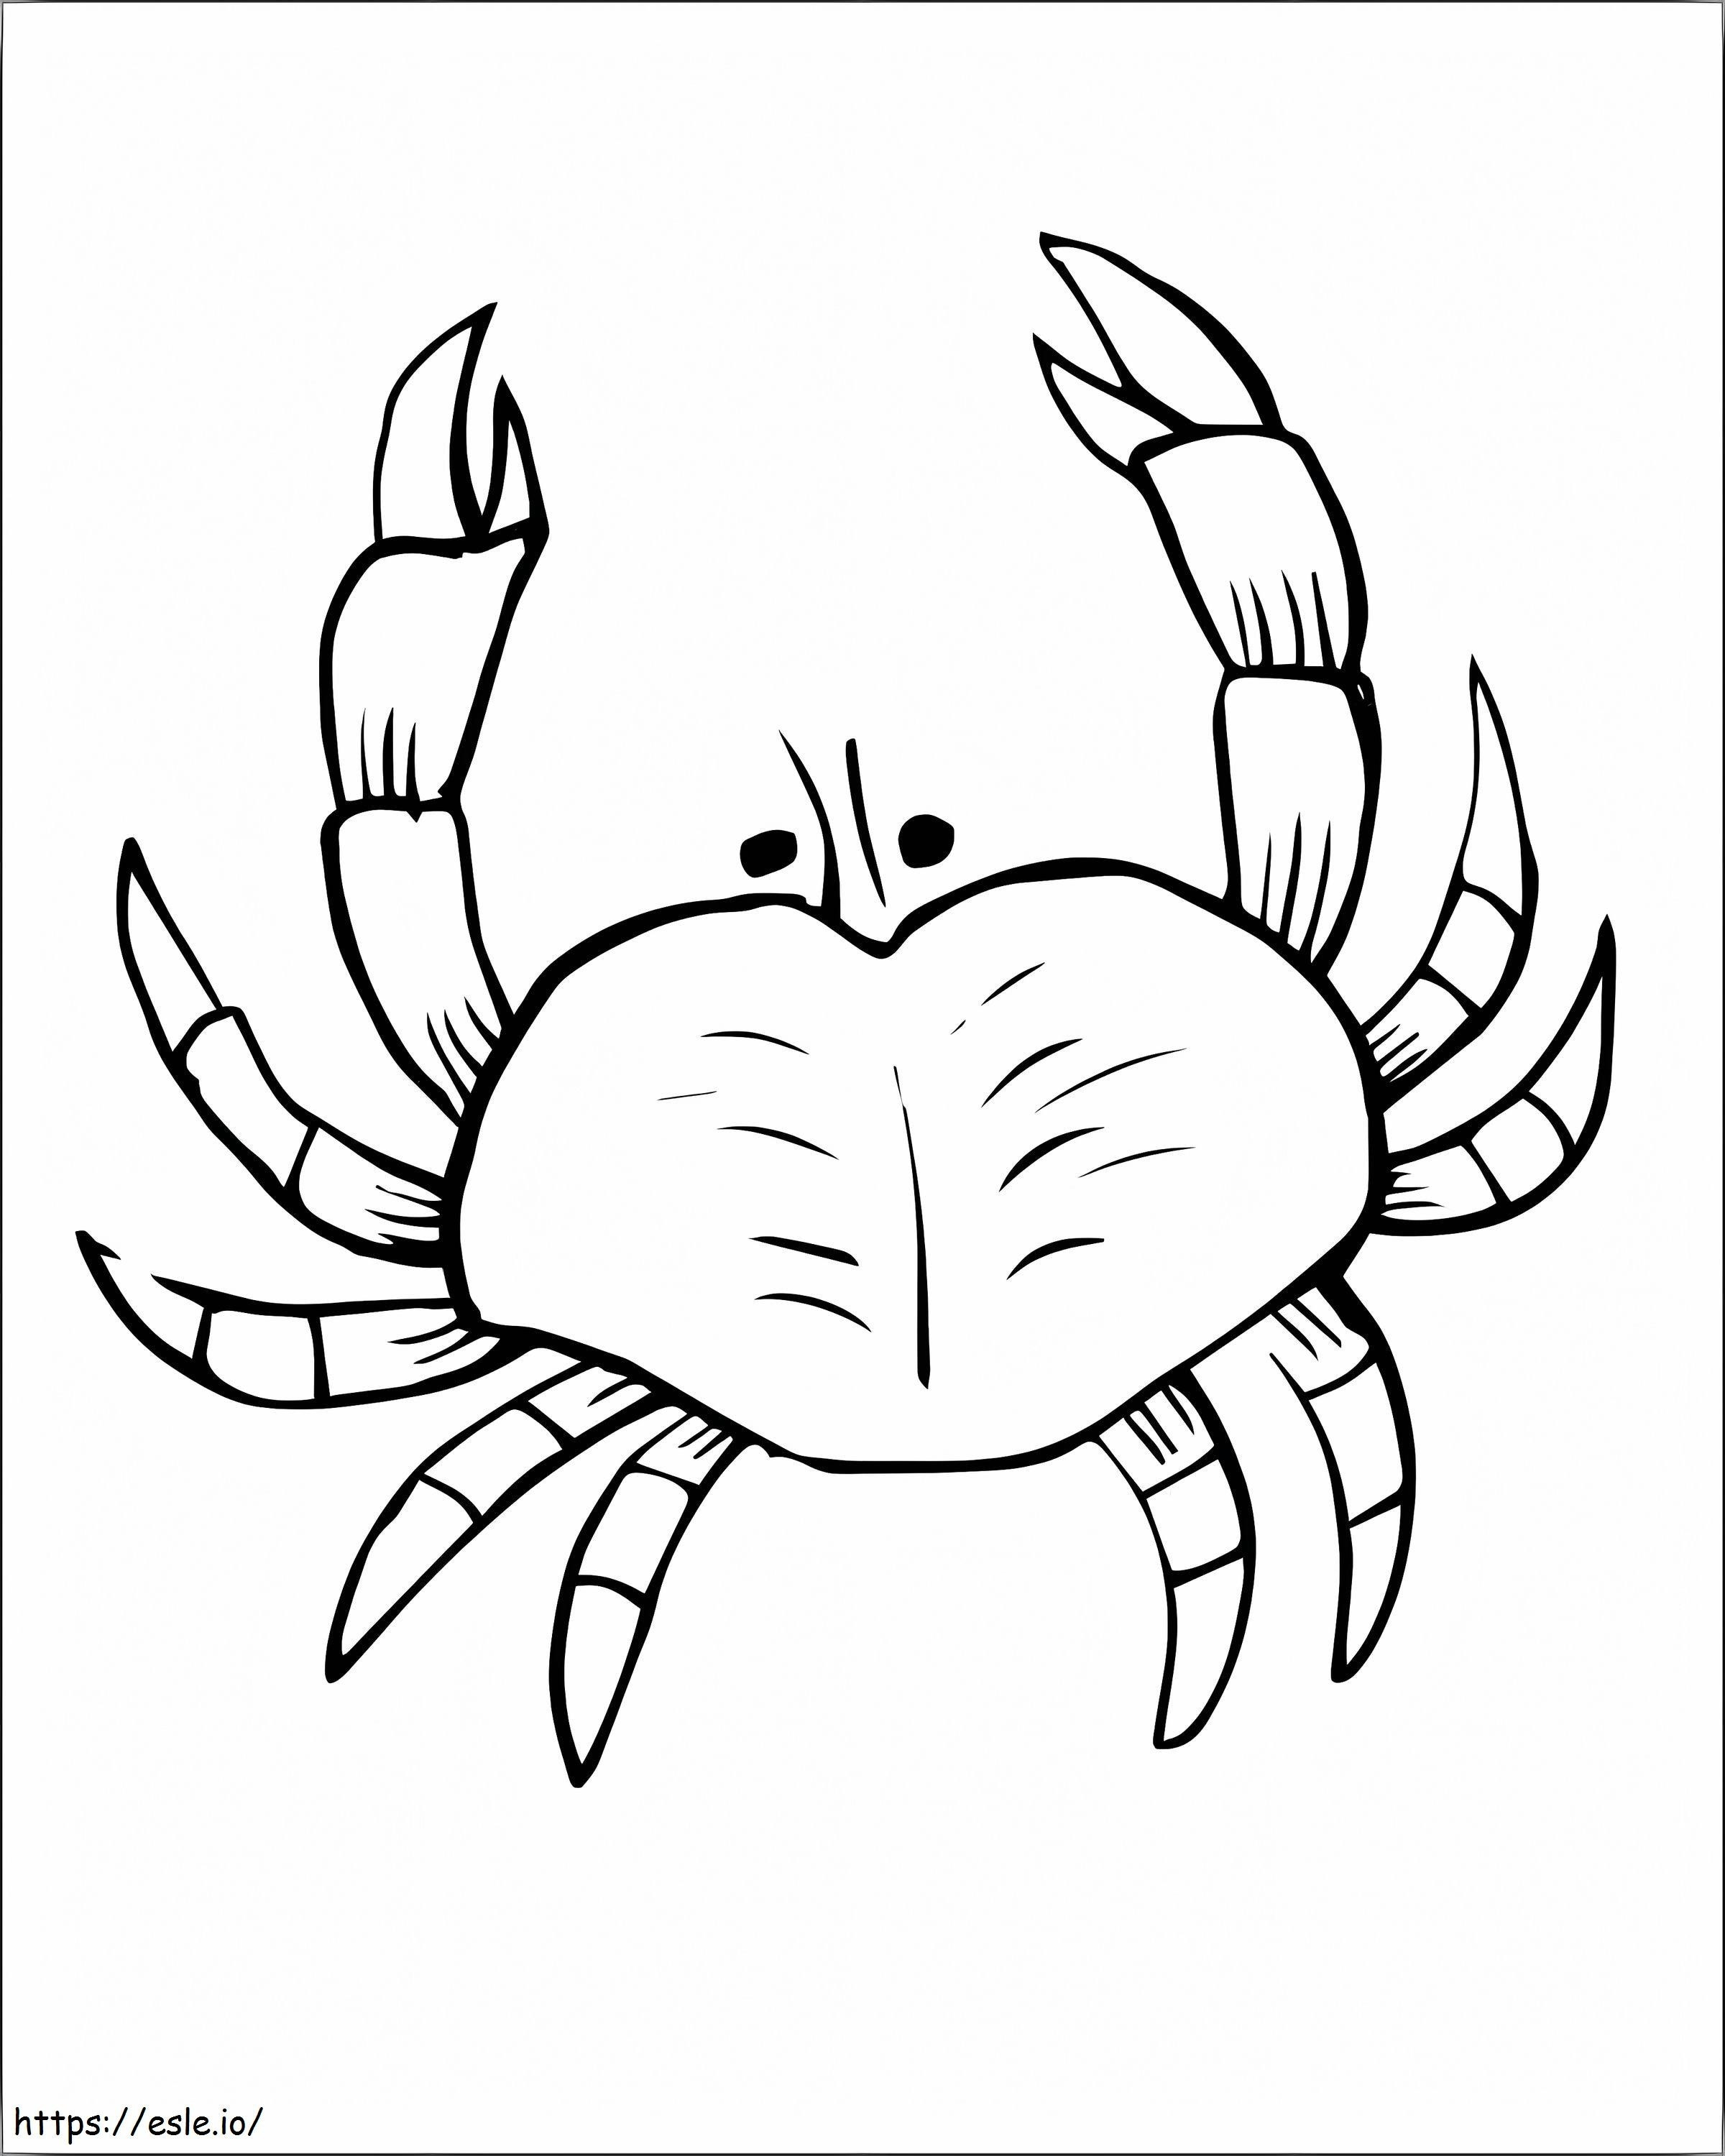 Coloriage Images gratuites de crabe à imprimer dessin